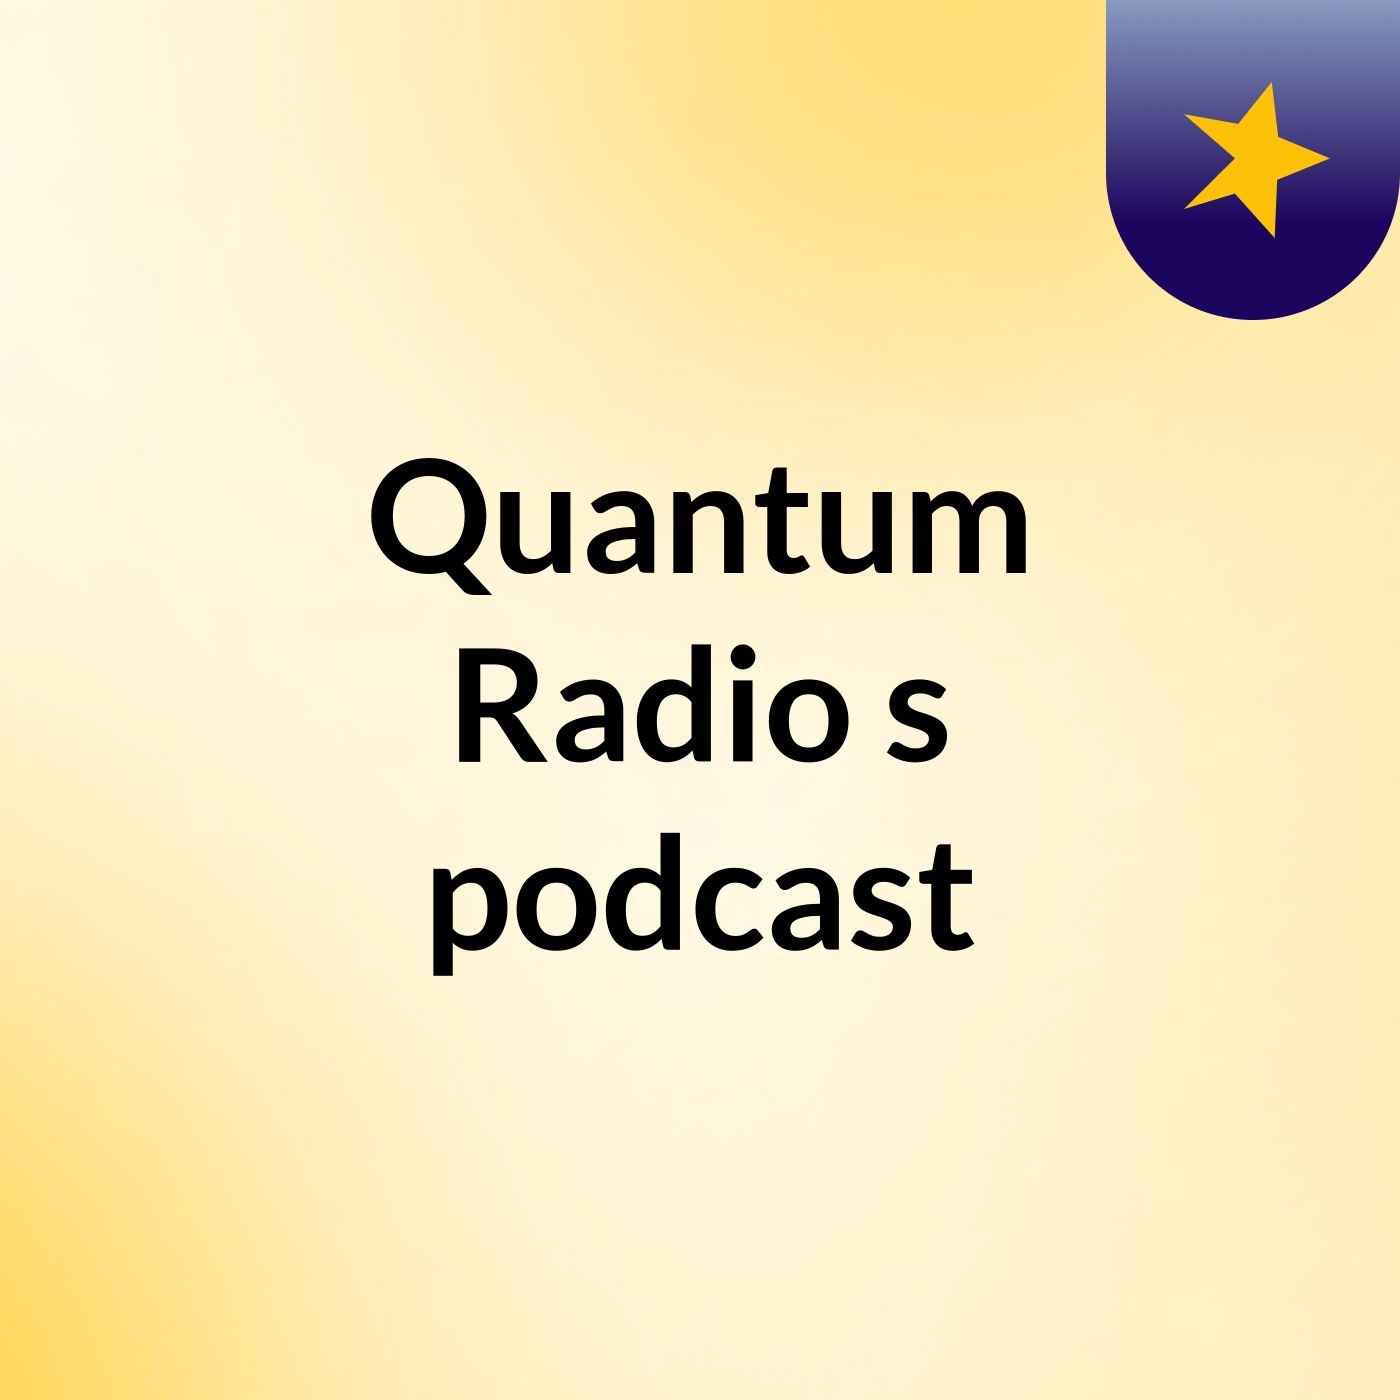 Episode 7 - Quantum Radio's podcast